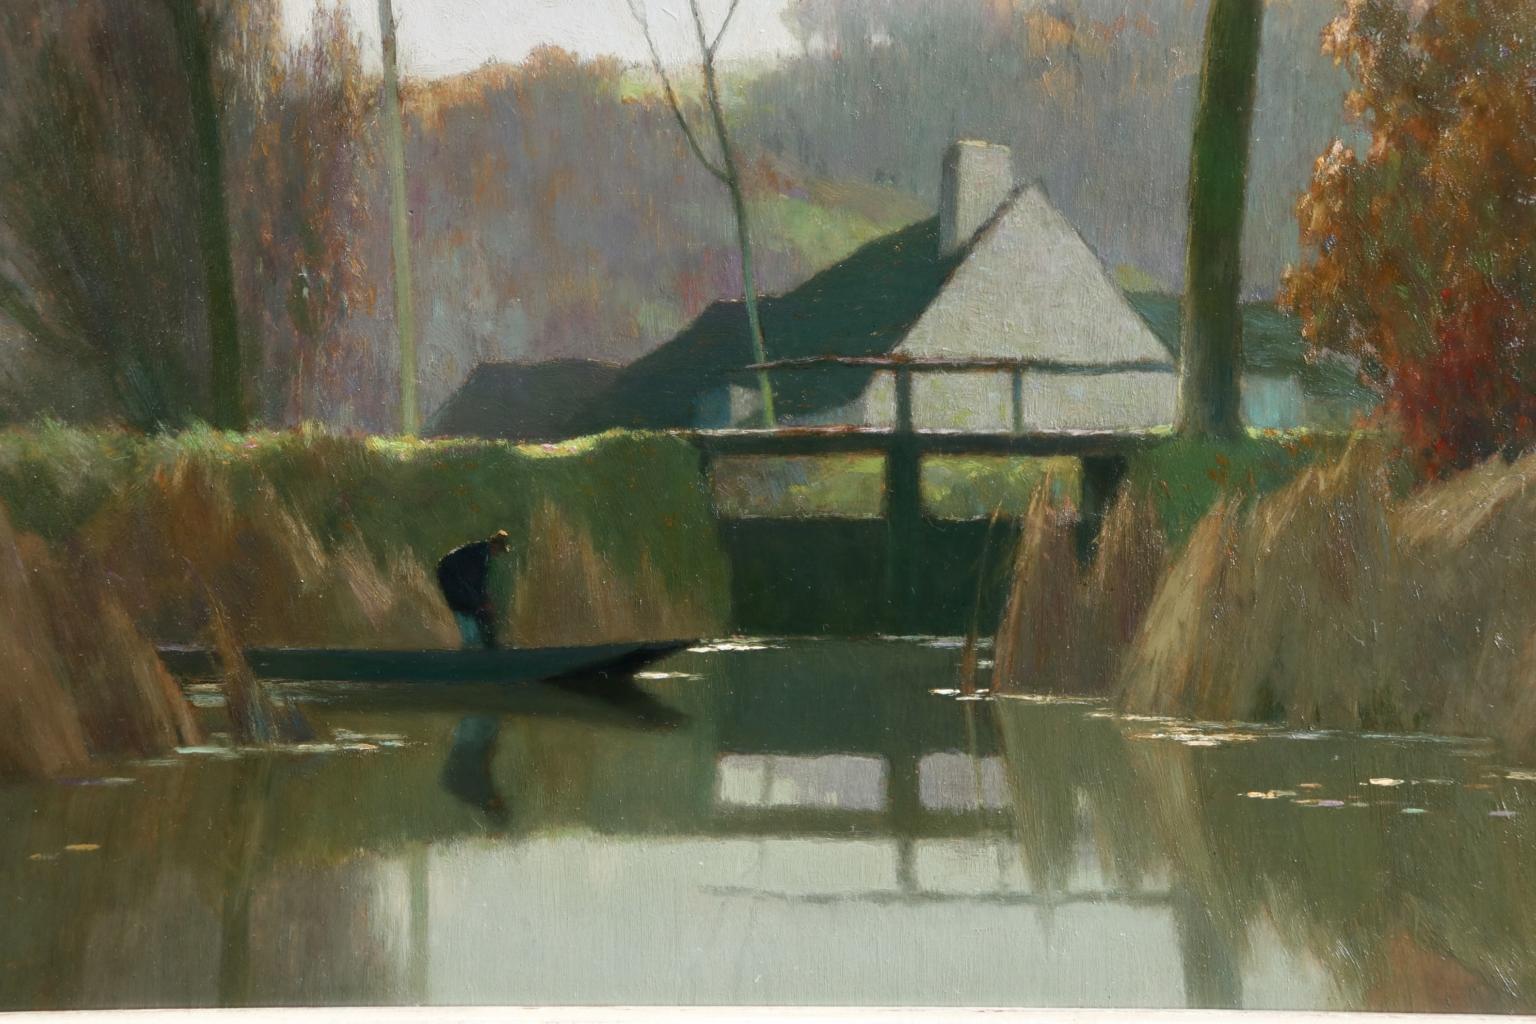 Novembre a la Reserve - Impressionist Oil, River in Landscape by Alexandre Jacob - Beige Figurative Painting by Alexandre Louis Jacob